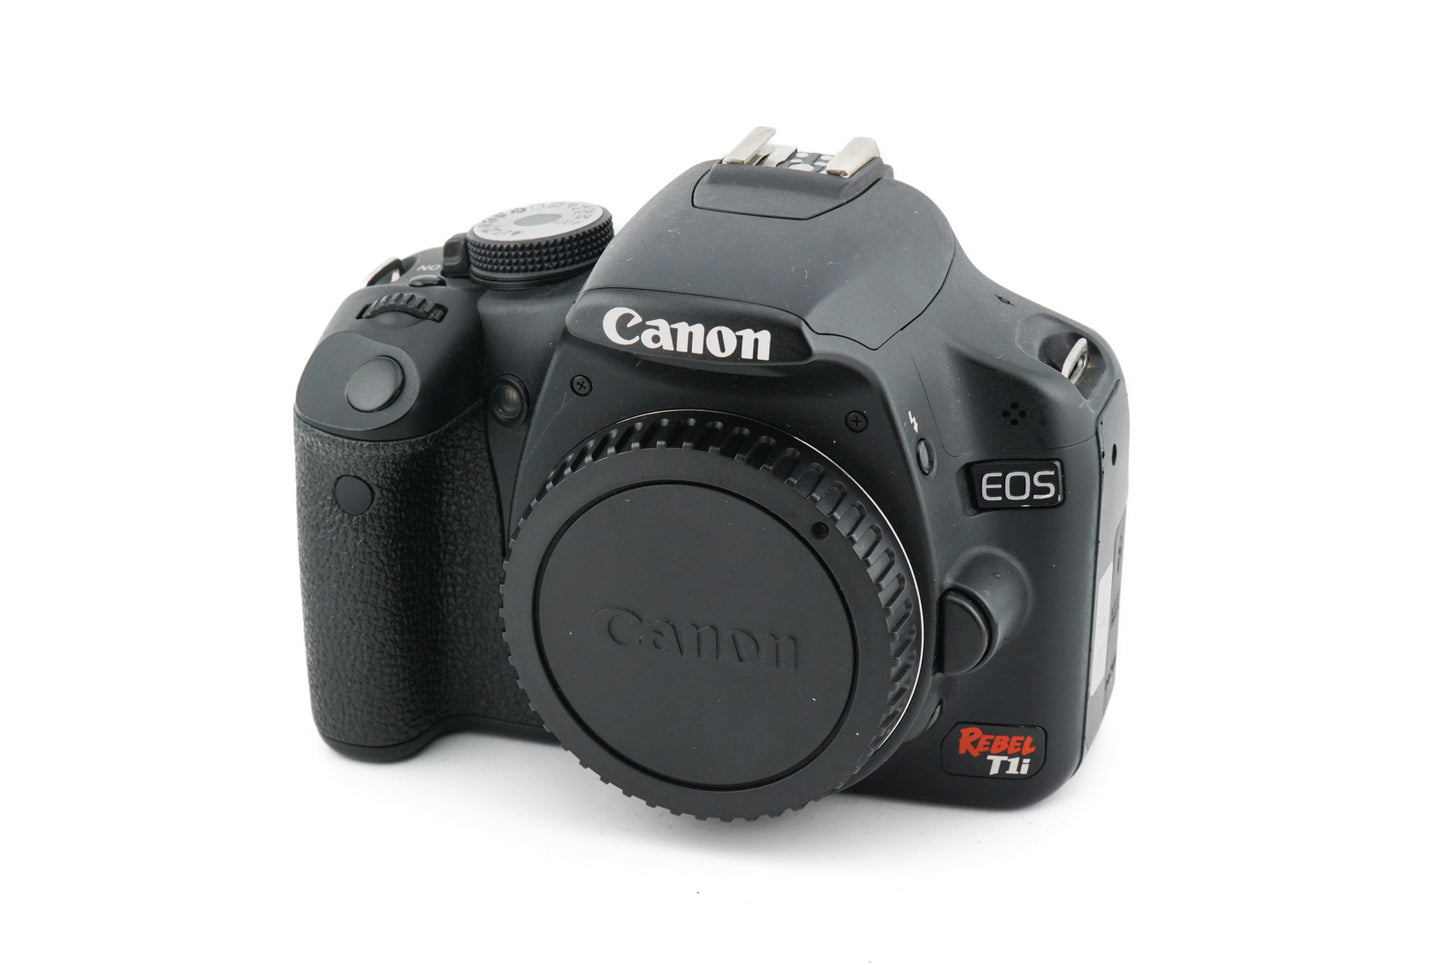 Canon EOS Rebel T1i - Camera